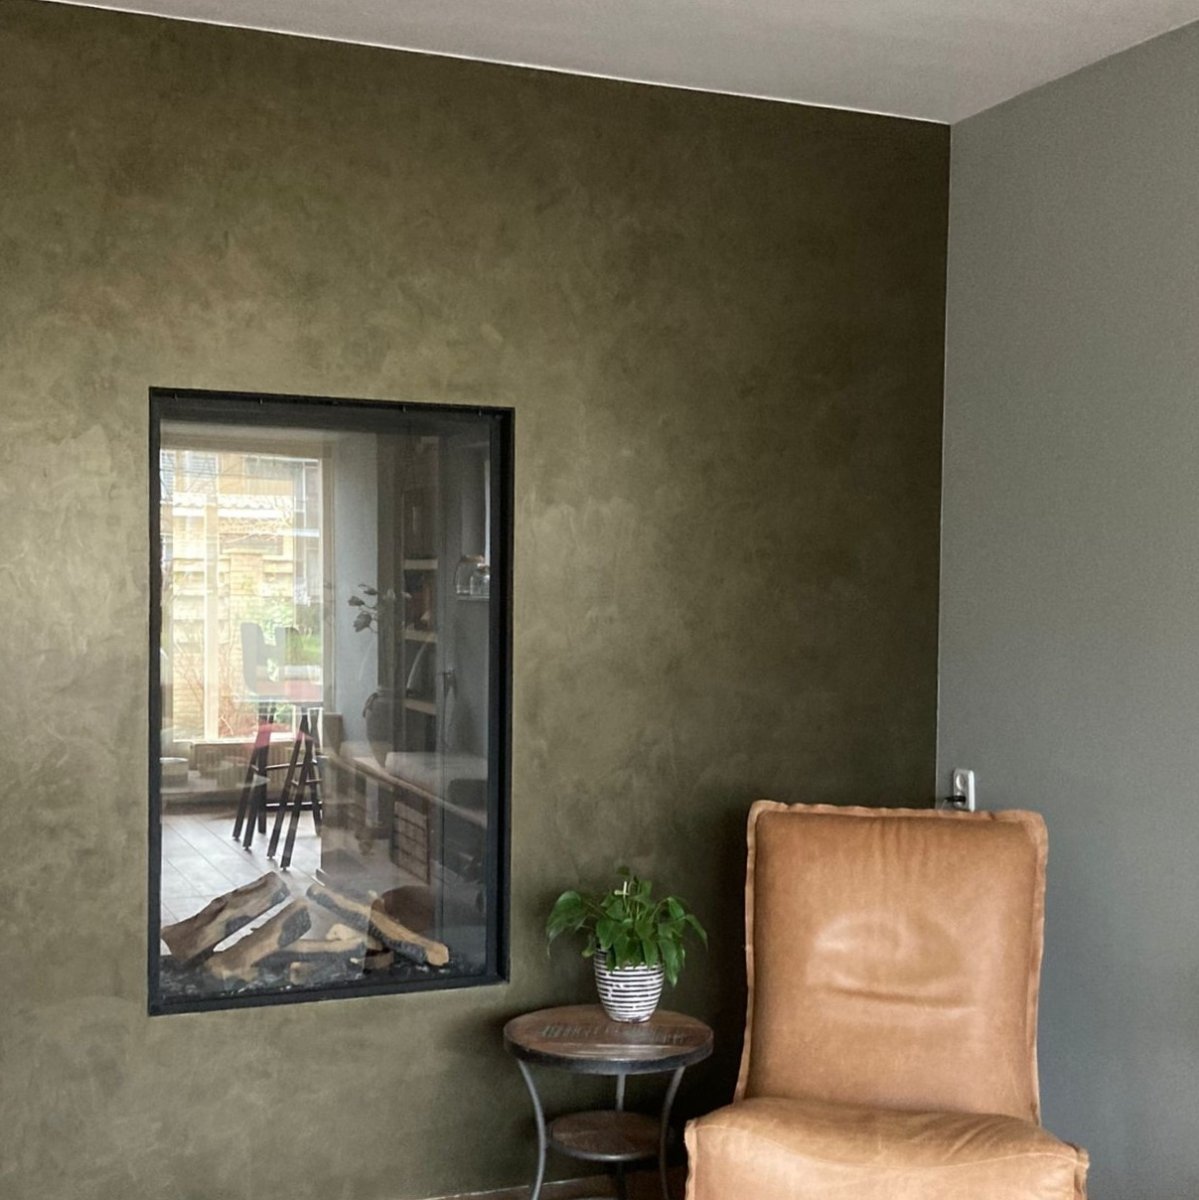 metallic-bronze-schouw-met-cognac-kleurige-stoel-in-woonkamer